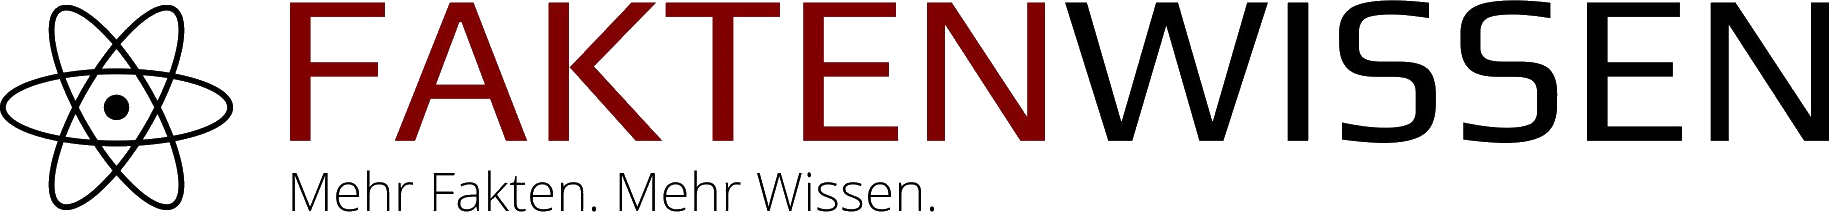 Faktenwissen_Logo